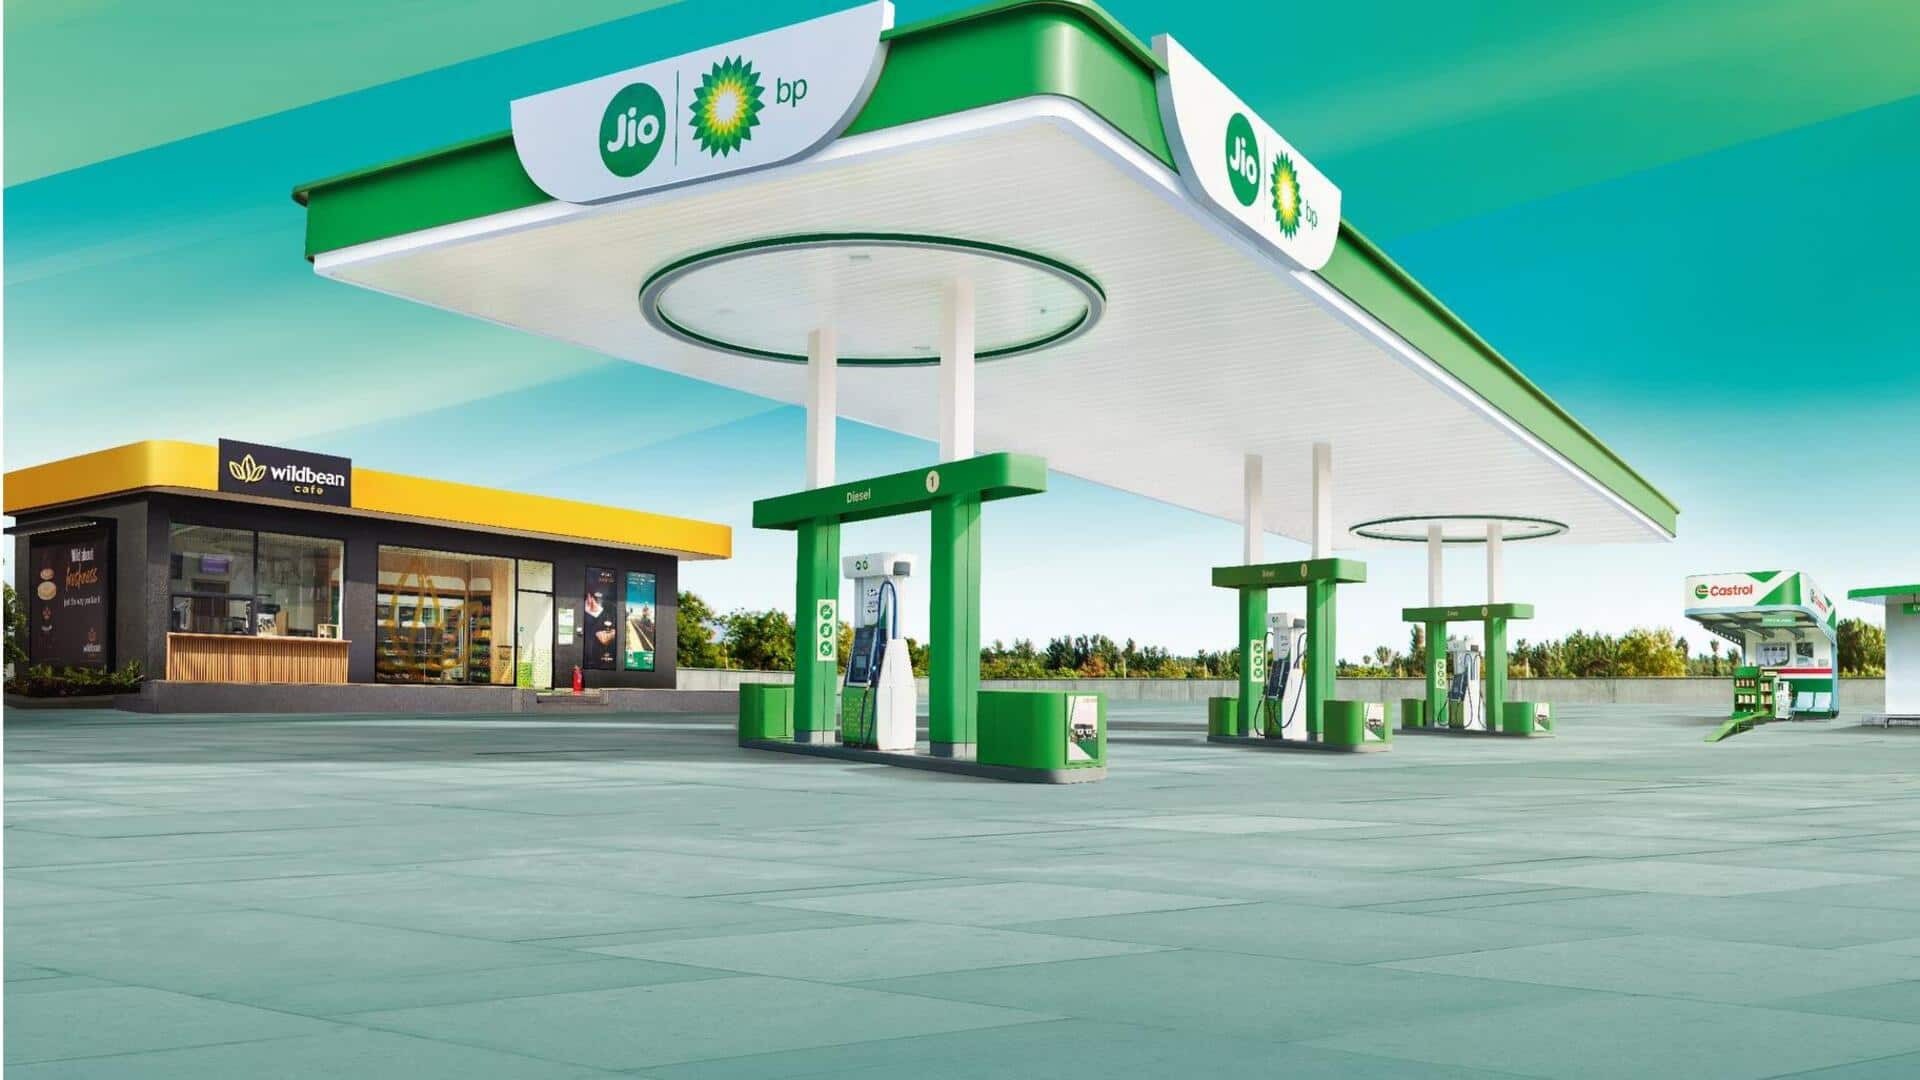 जियो-BP खोलेगी 250 ईंधन स्टेशन, EV चार्जिंग पाॅइंट भी बढ़ाएगी 